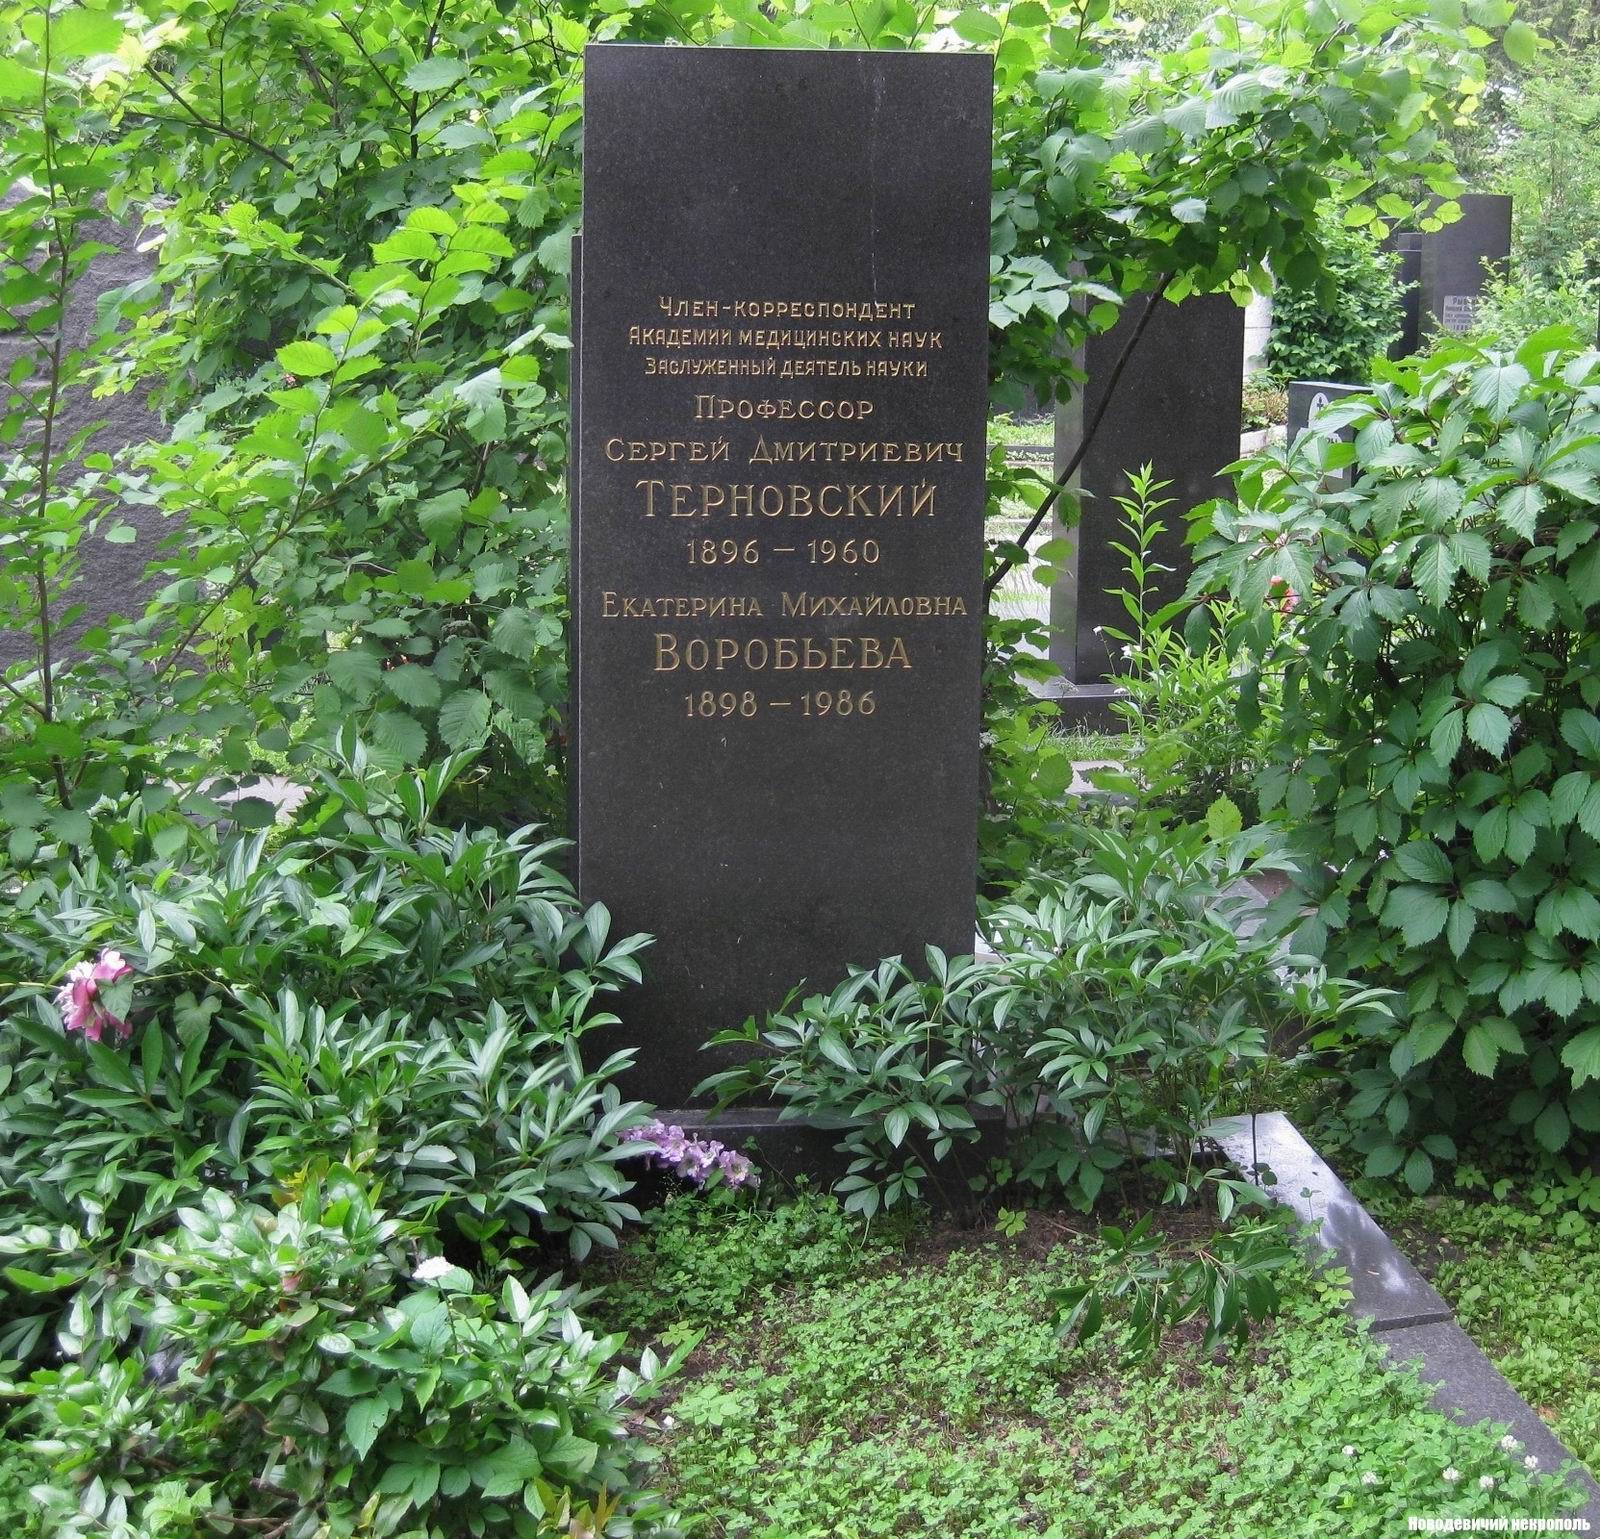 Памятник на могиле Терновского С.Д. (1896-1960), на Новодевичьем кладбище (8-7-11).